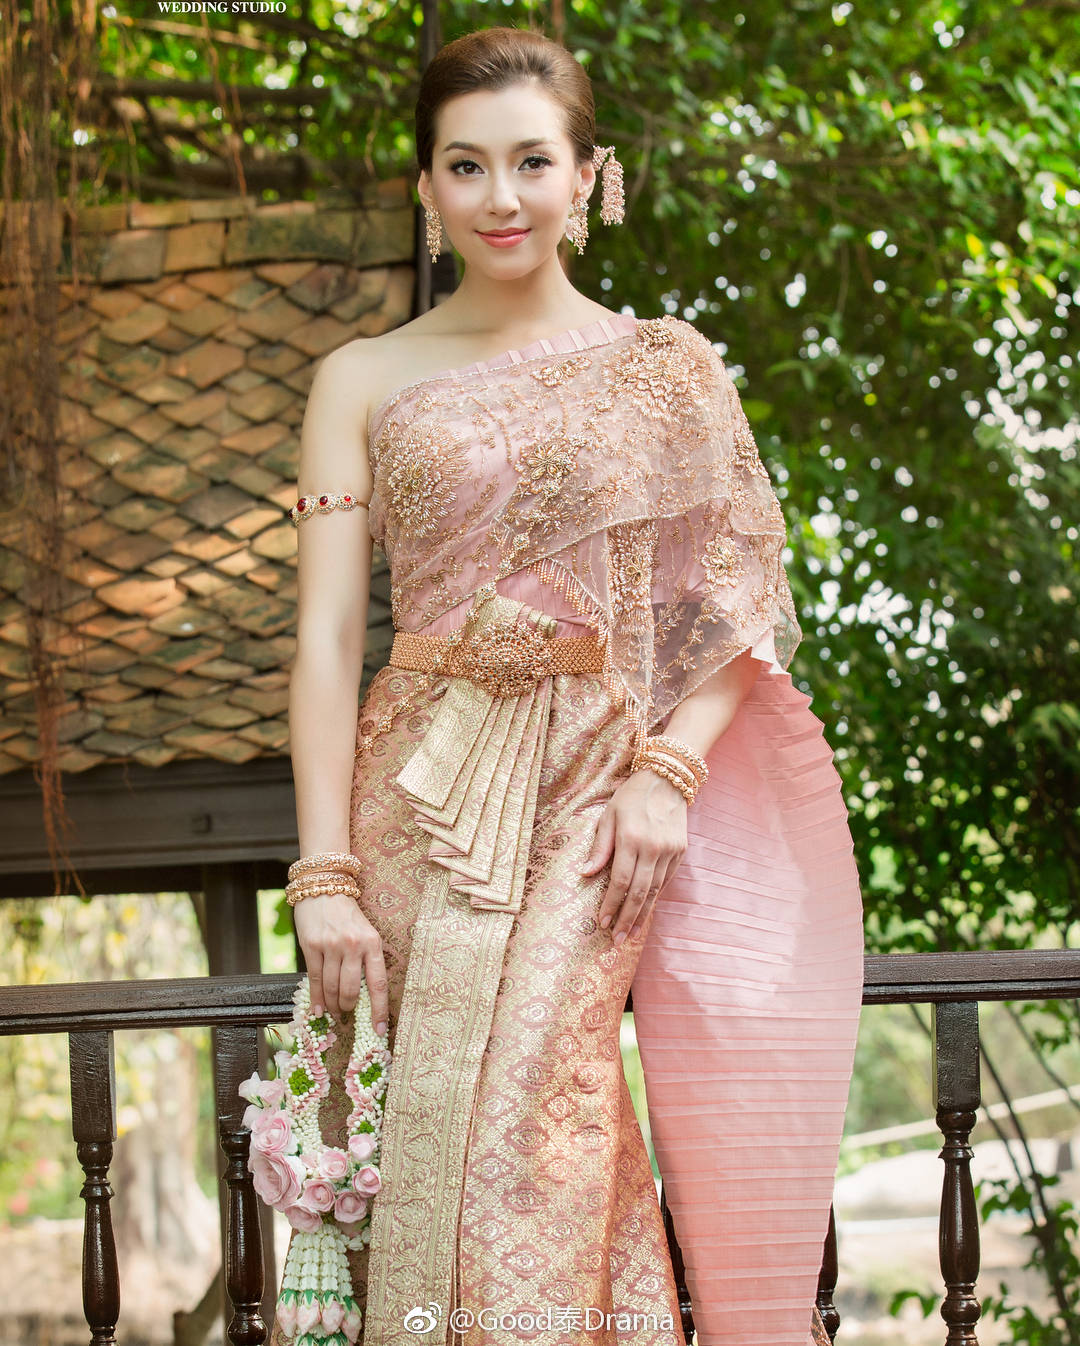 泰国传统服装的美丽的泰国女孩 库存照片. 图片 包括有 迷住, 美女, 布料, 五颜六色, 丝绸, 女性 - 72235788